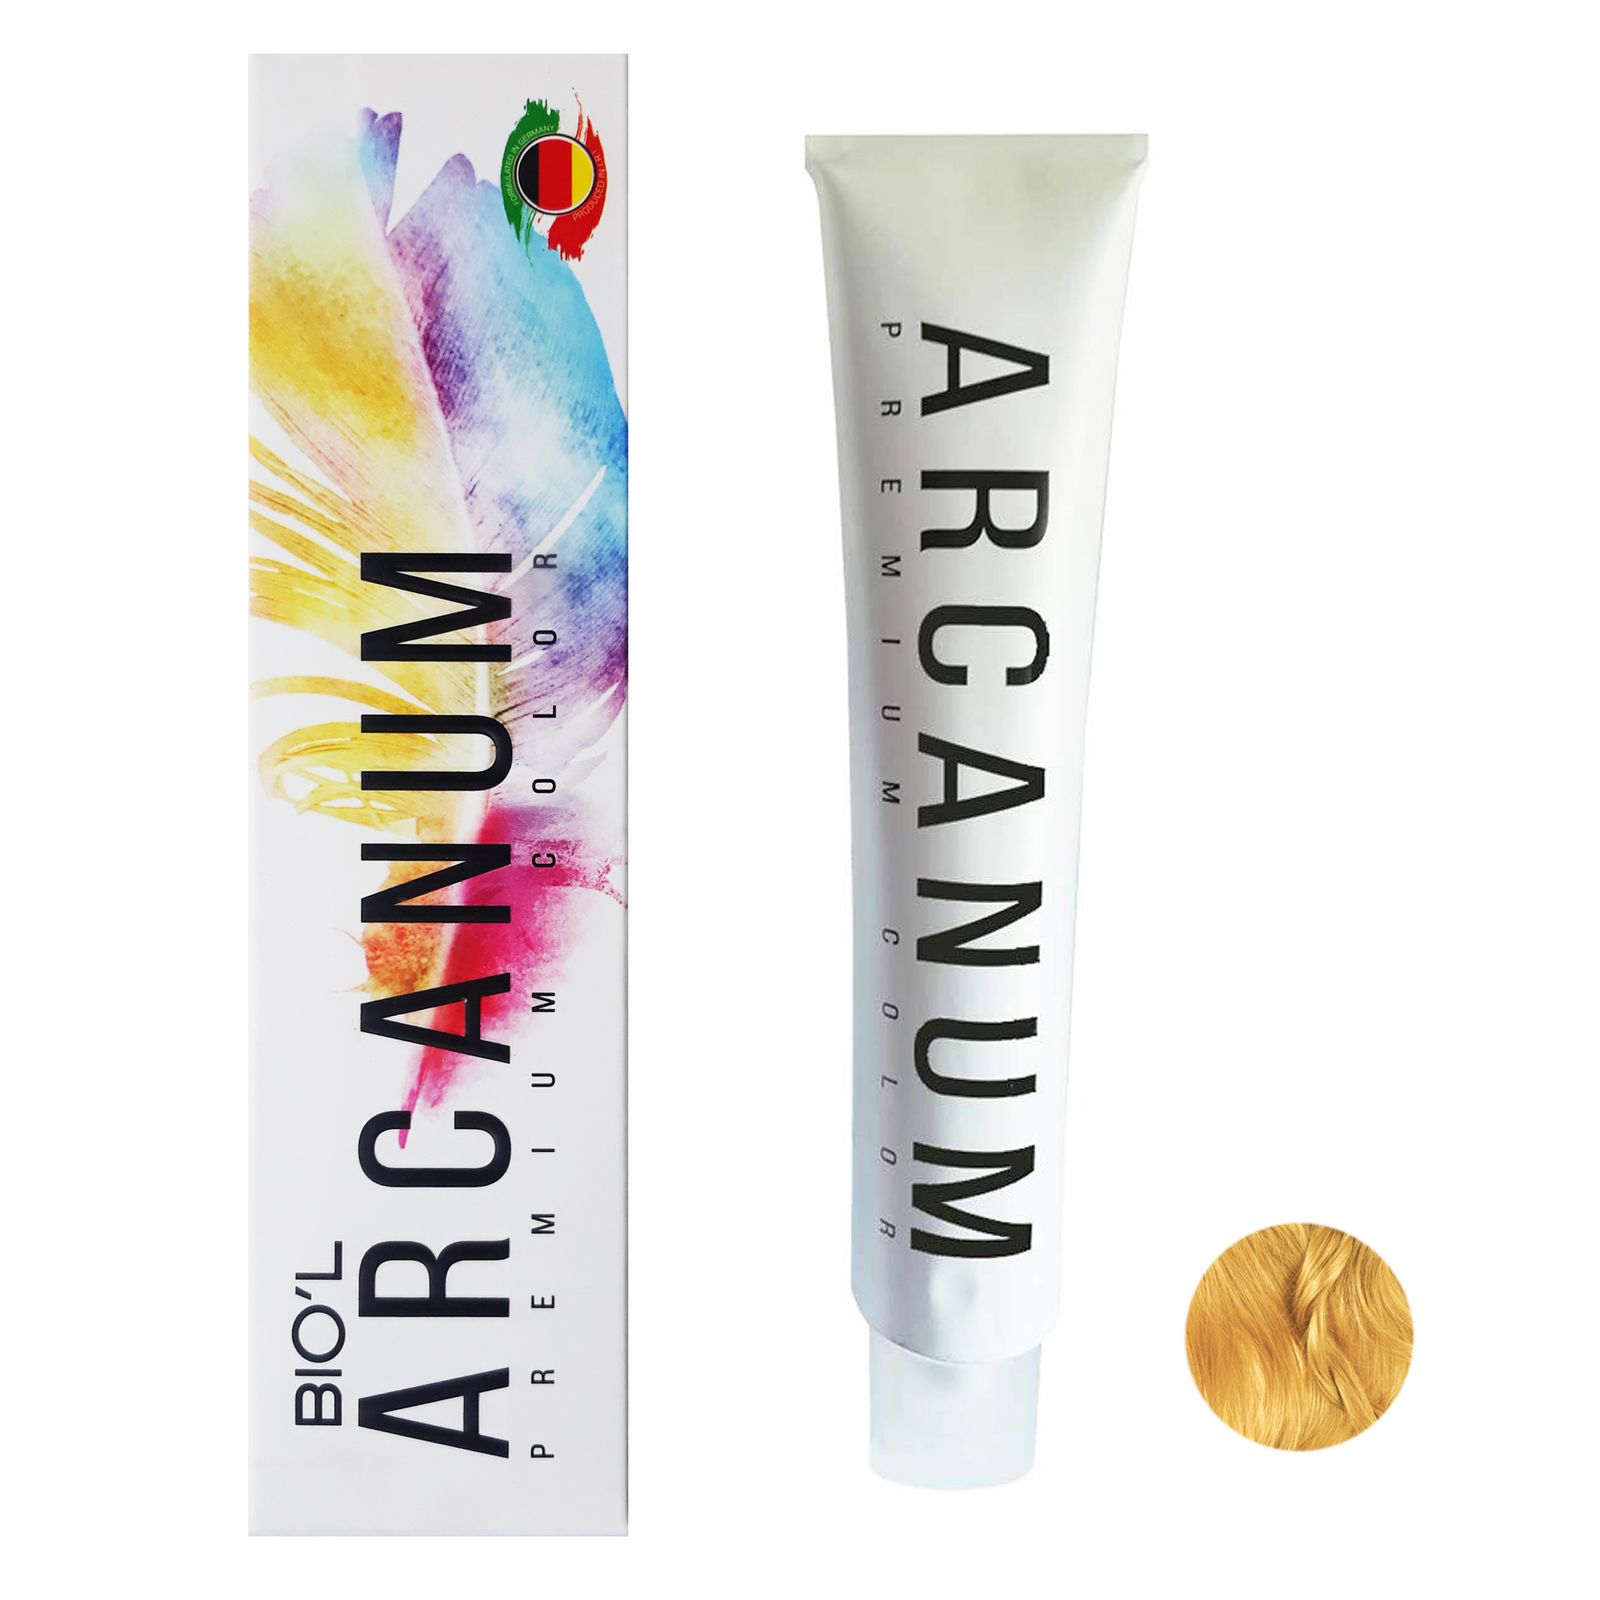  رنگ مو بیول مدل Arcanum شماره 9.34 حجم 120 میلی لیتر رنگ بلوند عسلی خیلی روشن -  - 2